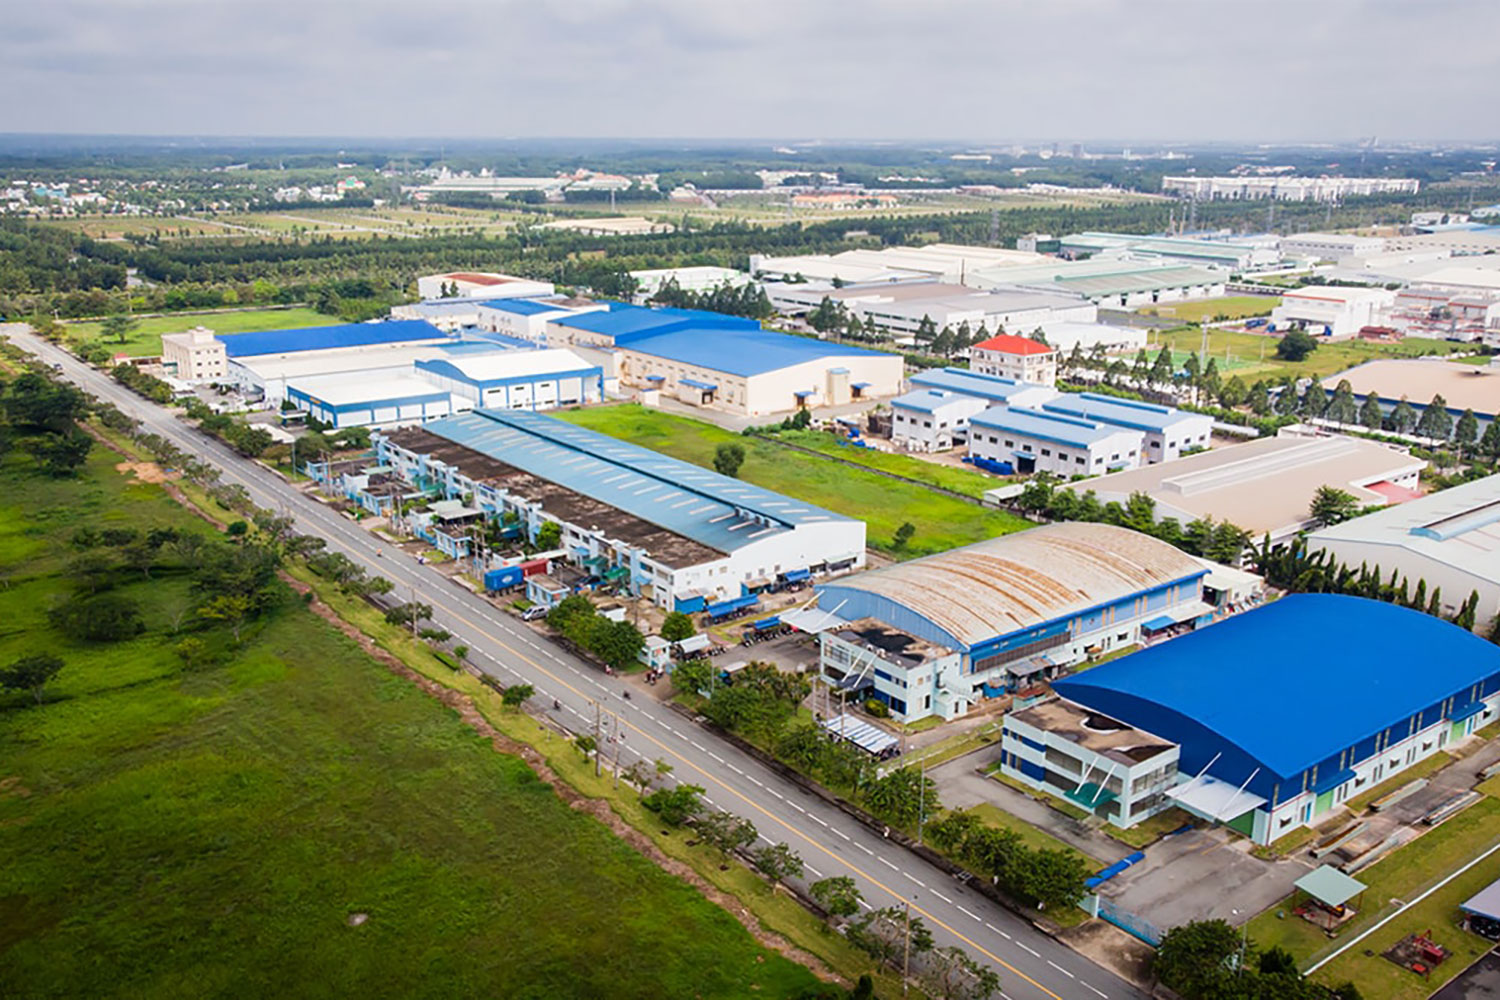 Chính phủ vừa bổ sung thêm 3 khu công nghiệp ở tỉnh Hưng Yên. Ảnh minh họa